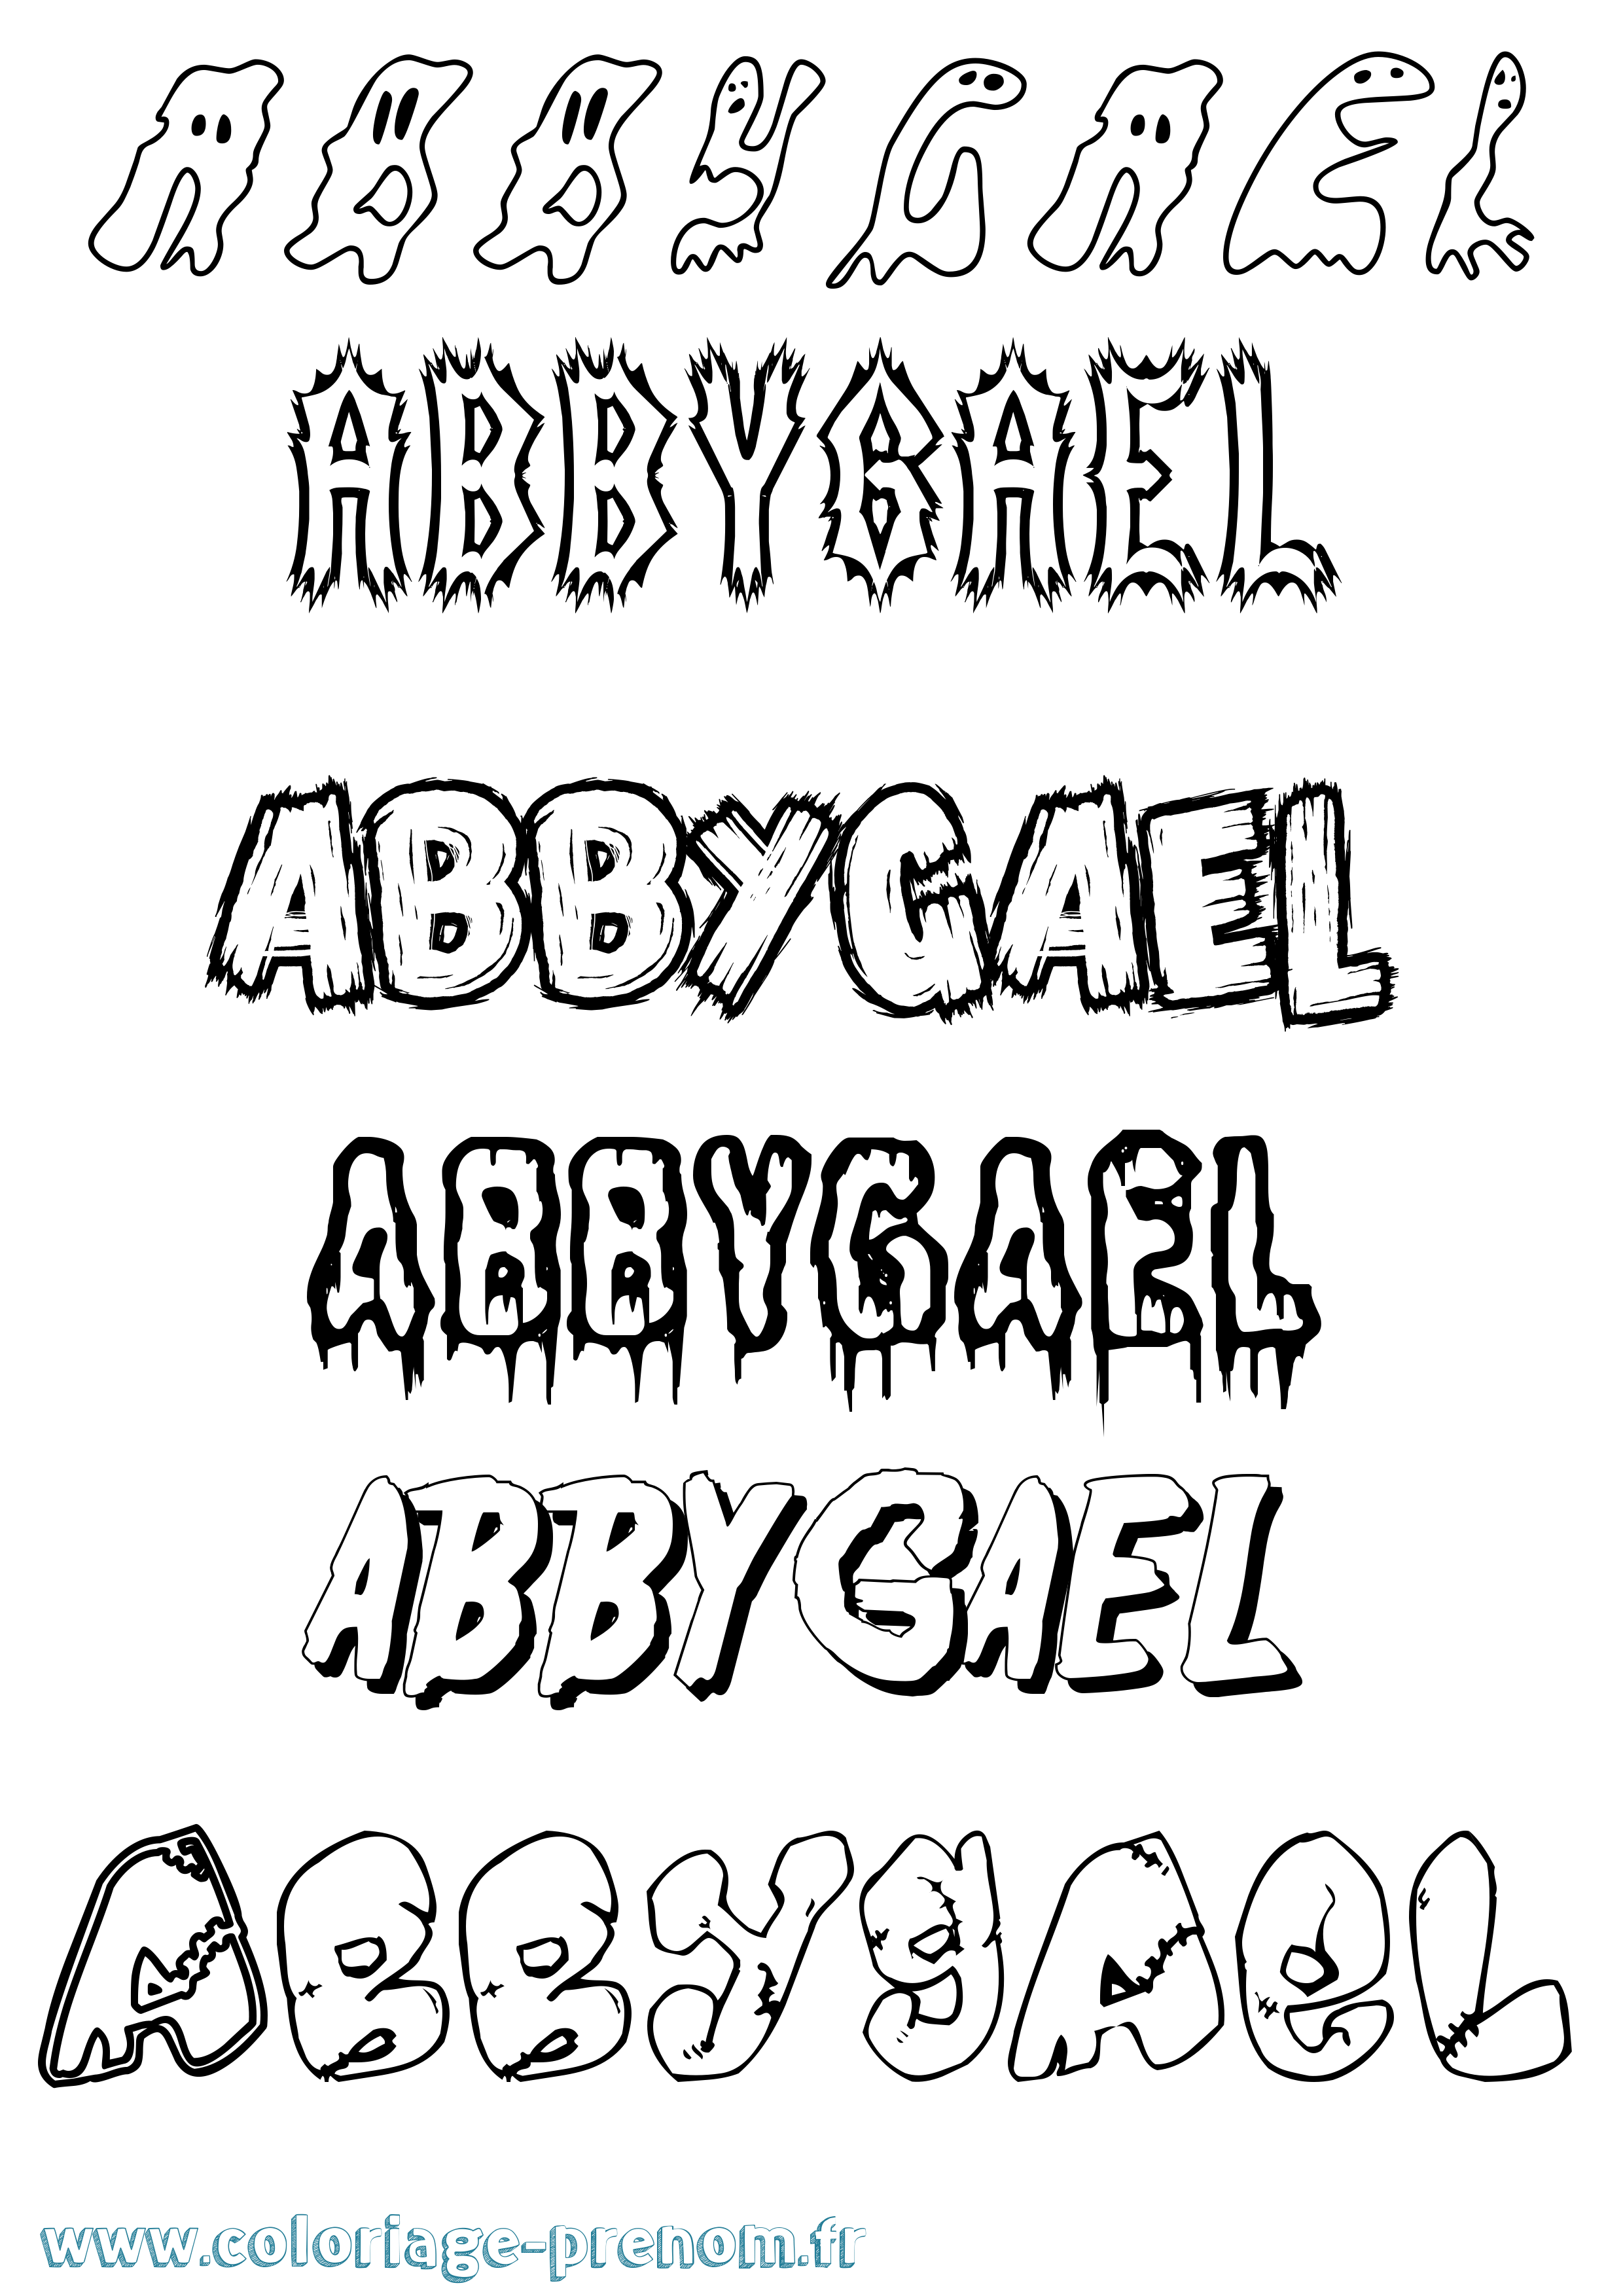 Coloriage prénom Abbygael Frisson